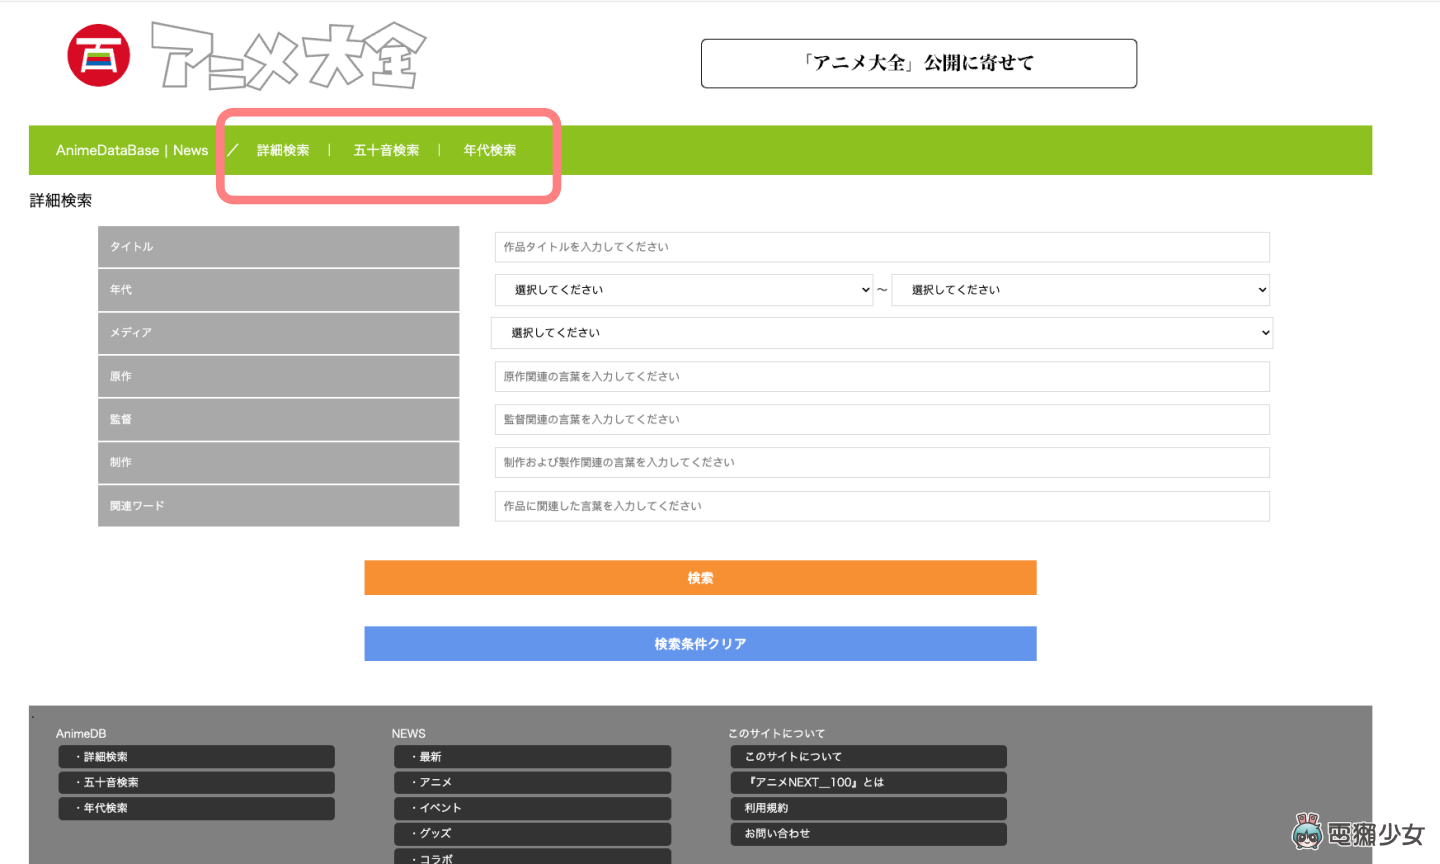 收錄近 15,000 部動畫！日本動畫資料庫『 動畫大全 』上線，你的動畫經典在裡面嗎？